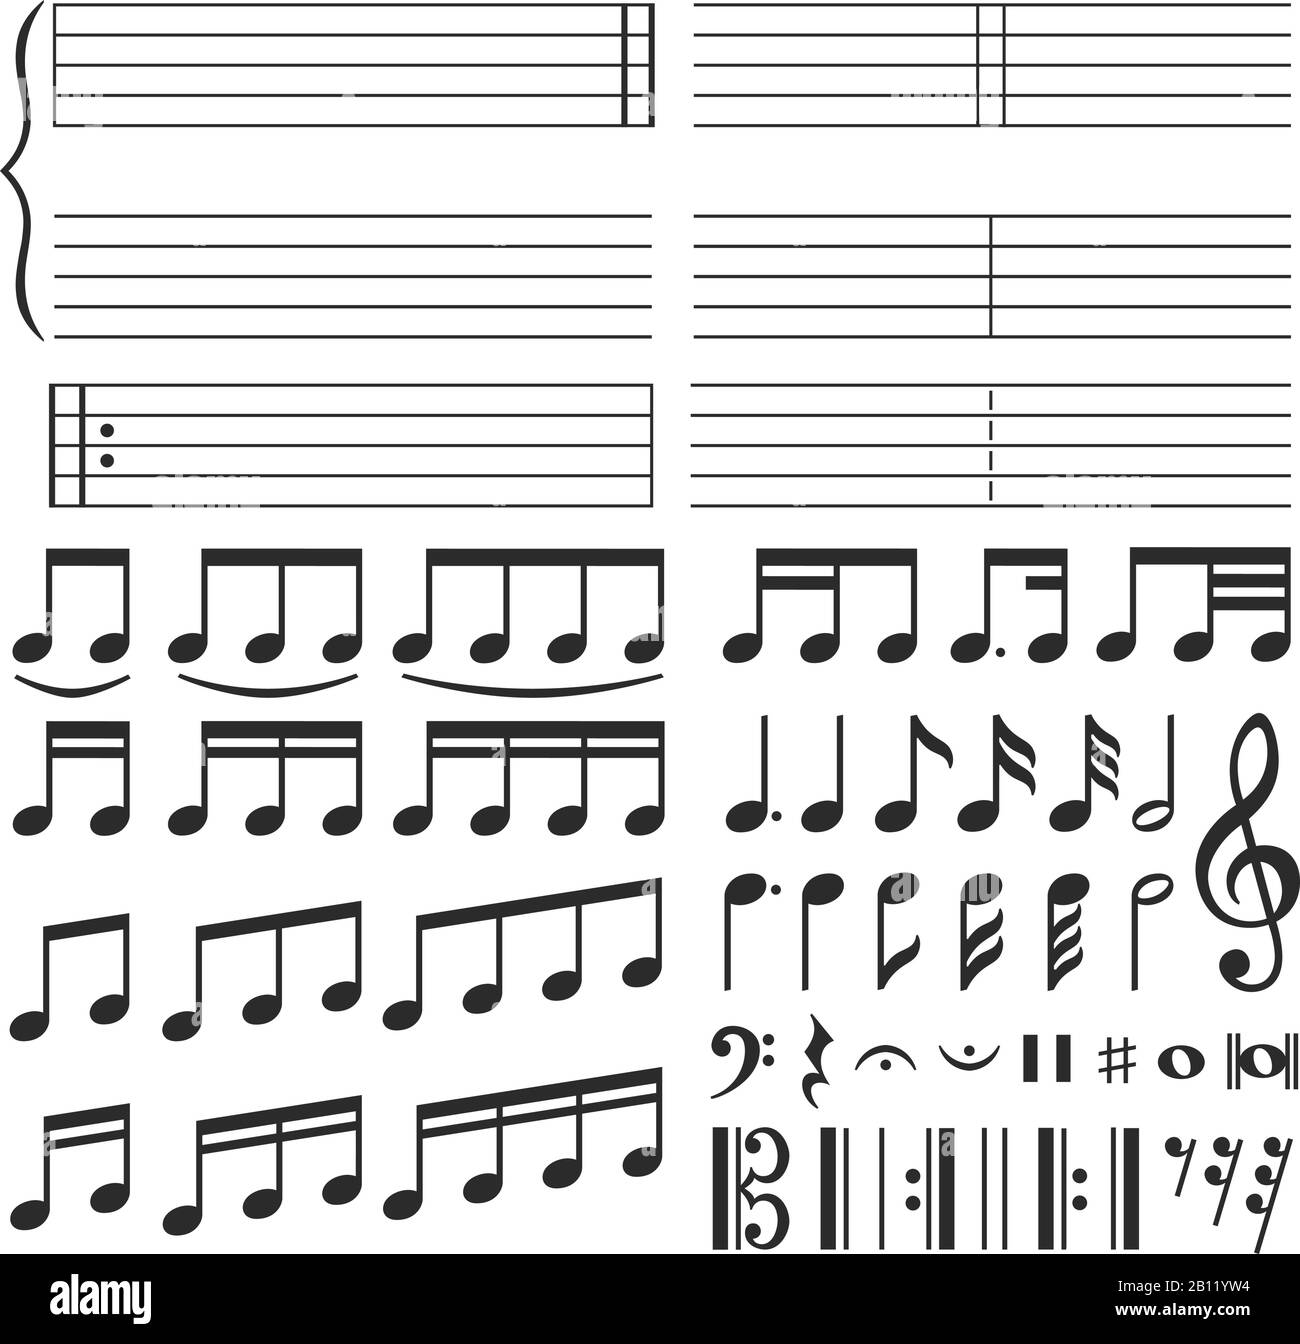 Musiknoten. Musikalische Melodie, Note und Treble Clef Drallform. Notizen-Symbole Vektorsatz Stock Vektor